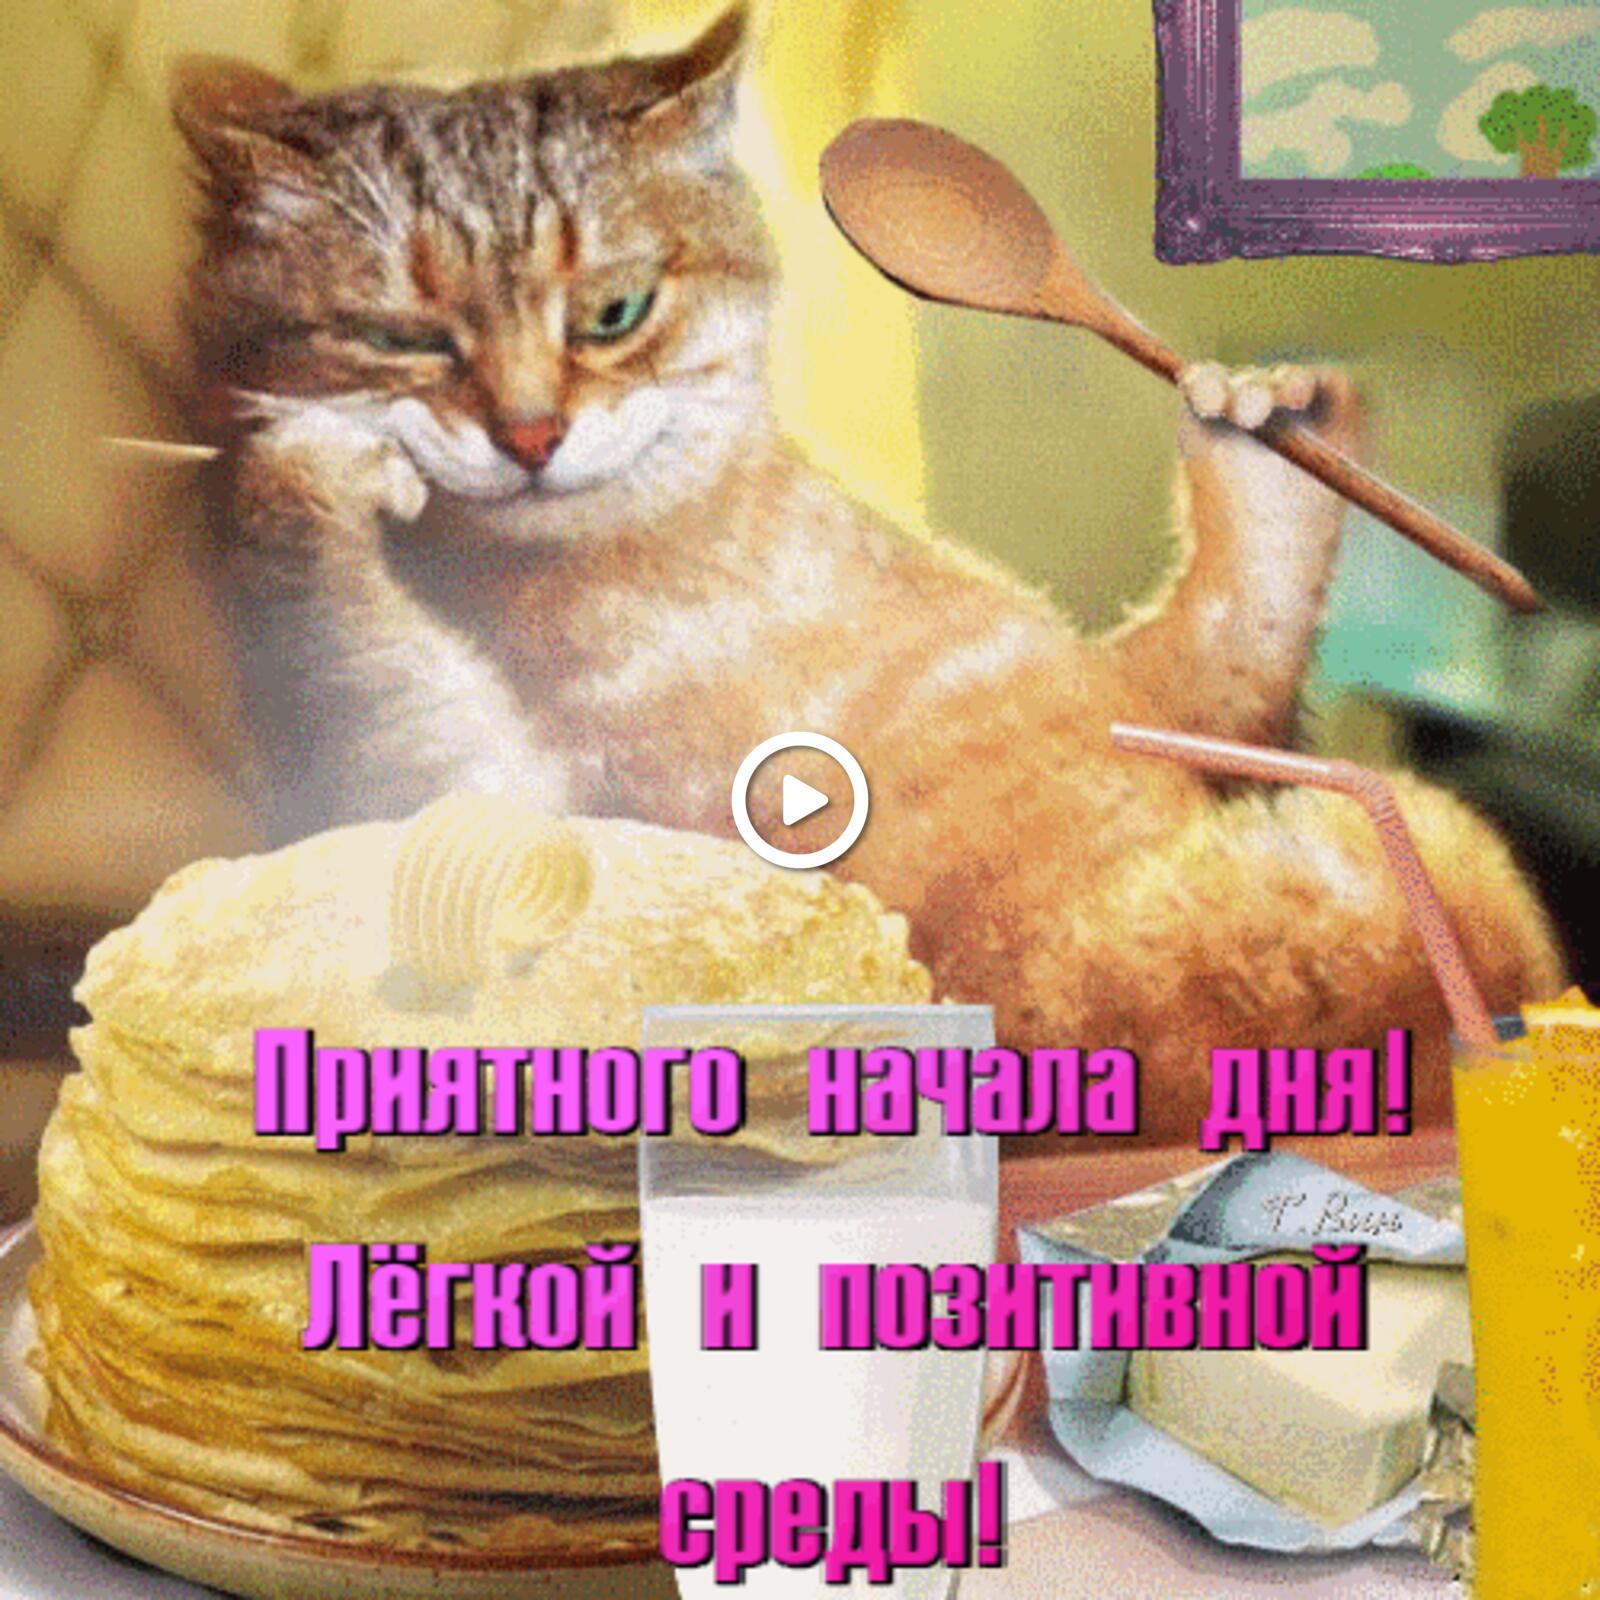 一张以早上好 猫 煎饼为主题的明信片